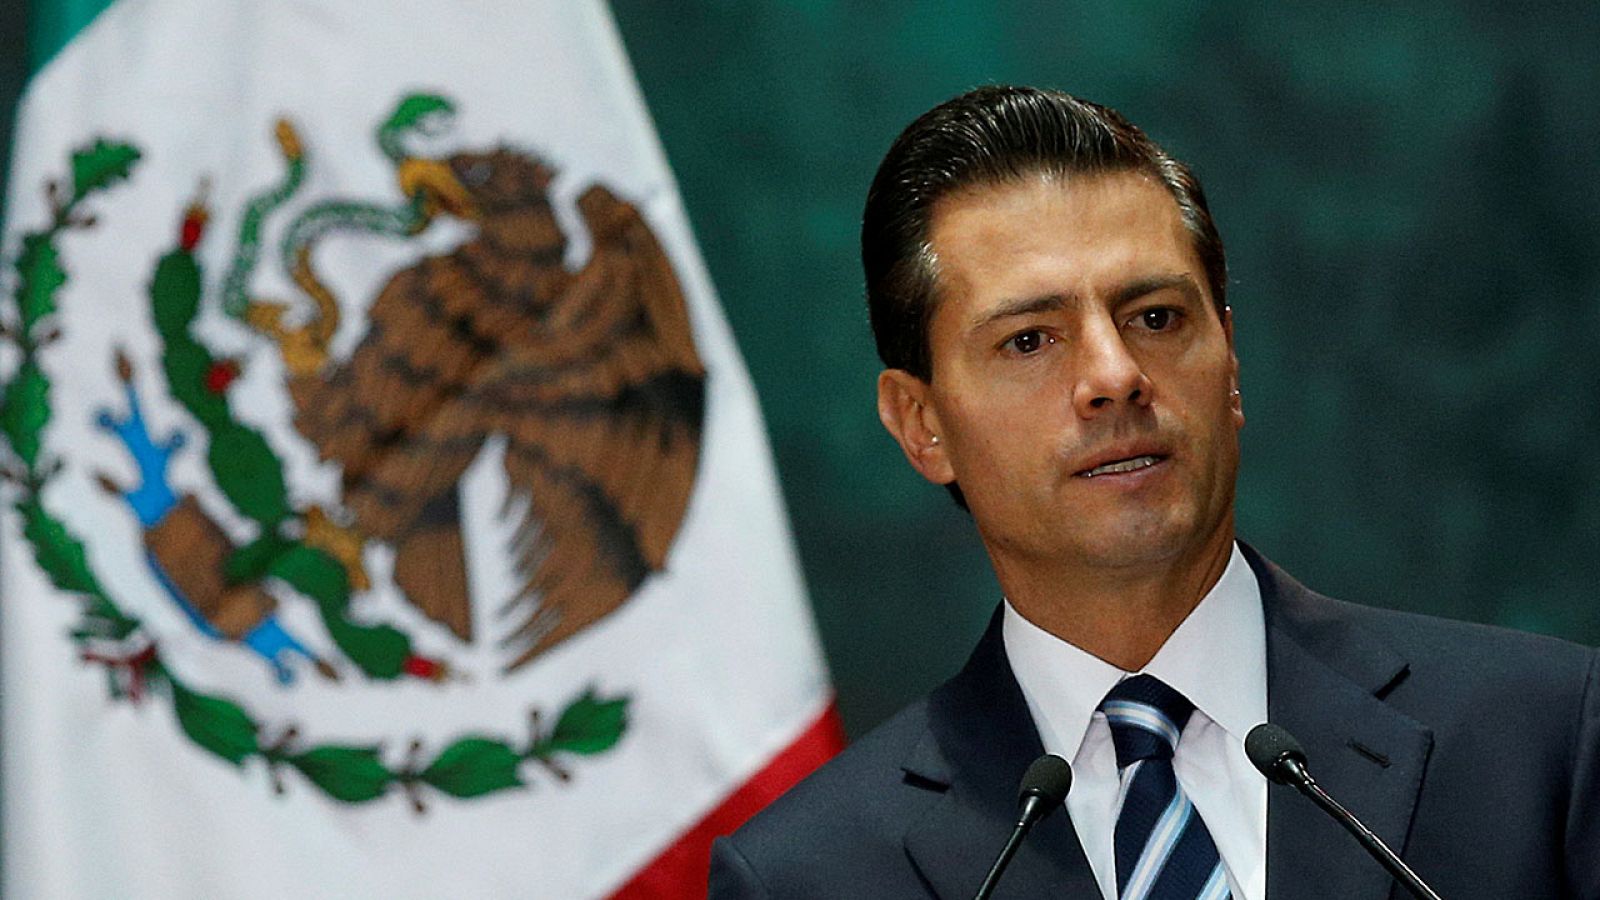 El presidente mexicano, Enrique Peña Nieto, se encuentro en su momento más bajo de popularidad.